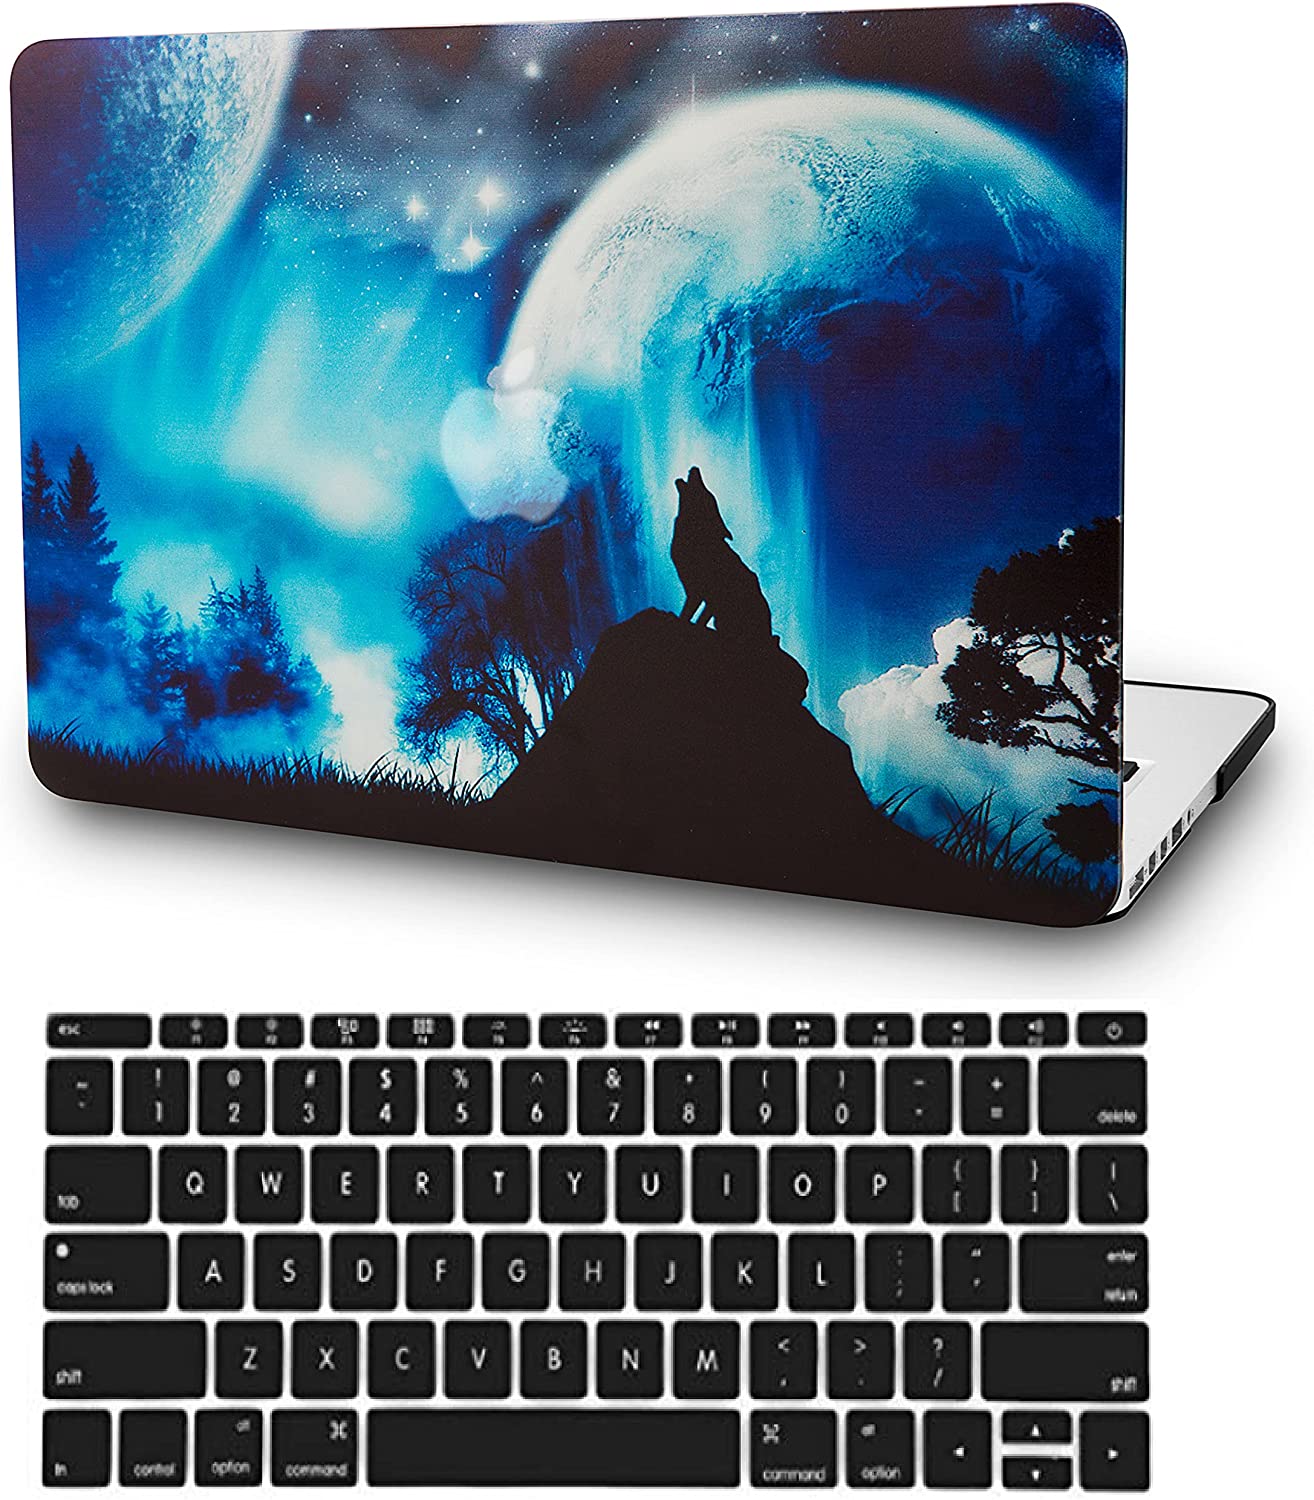 keyboard type for late 2015 mac book pro retina